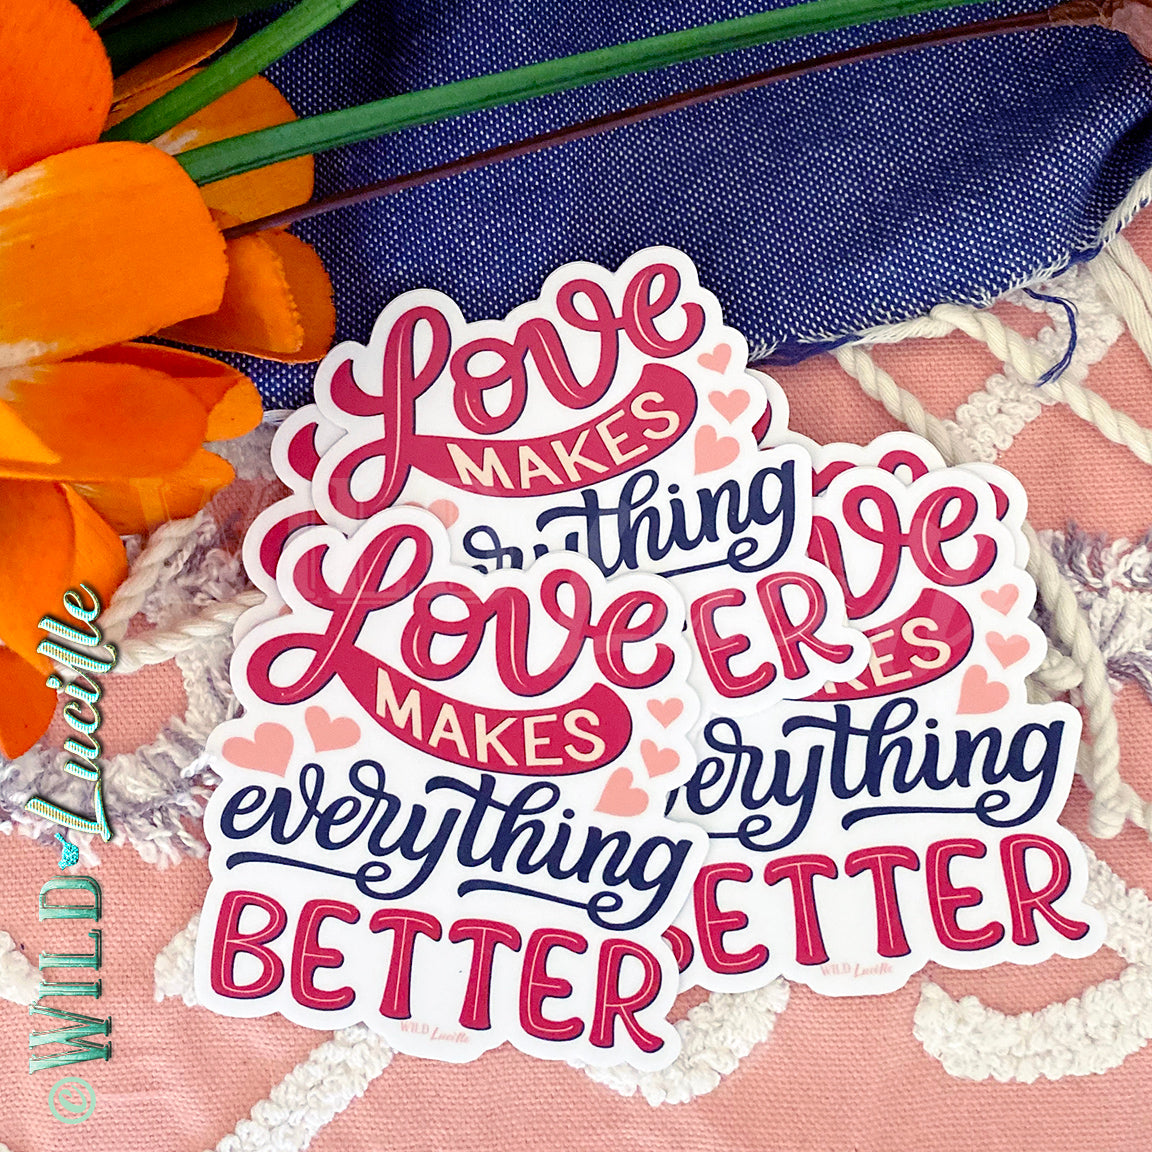 Love Makes Everything Better - Vinyl Sticker Decals